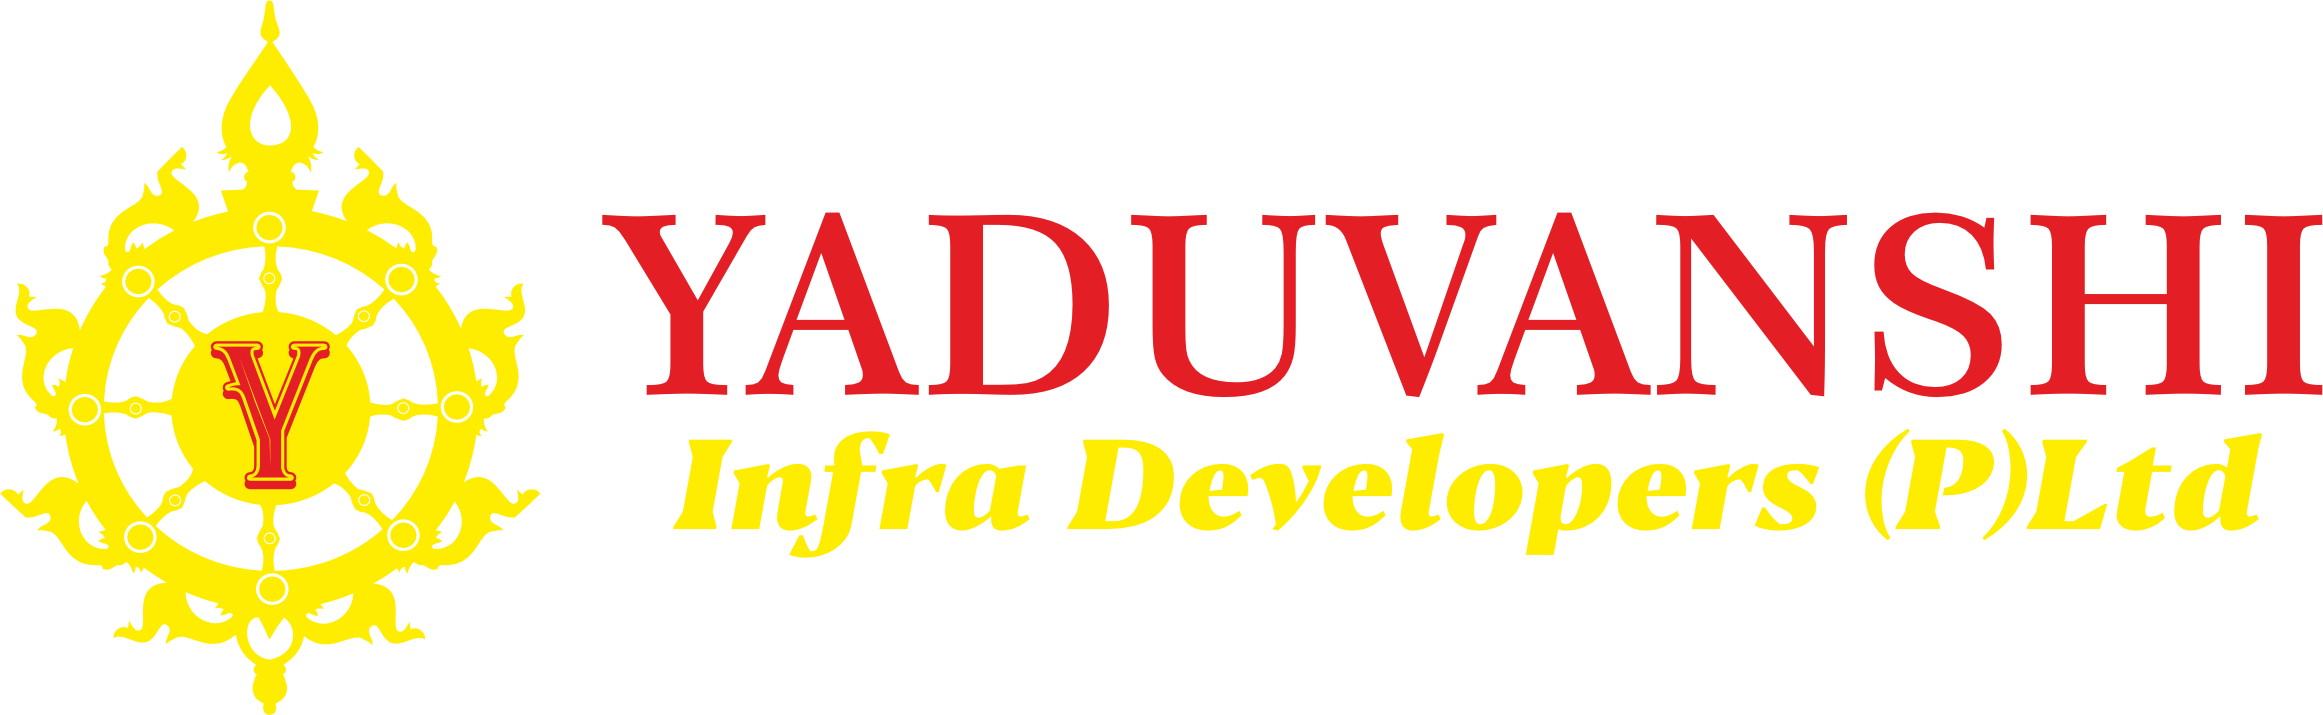 Yaduvanshi Infra Developers